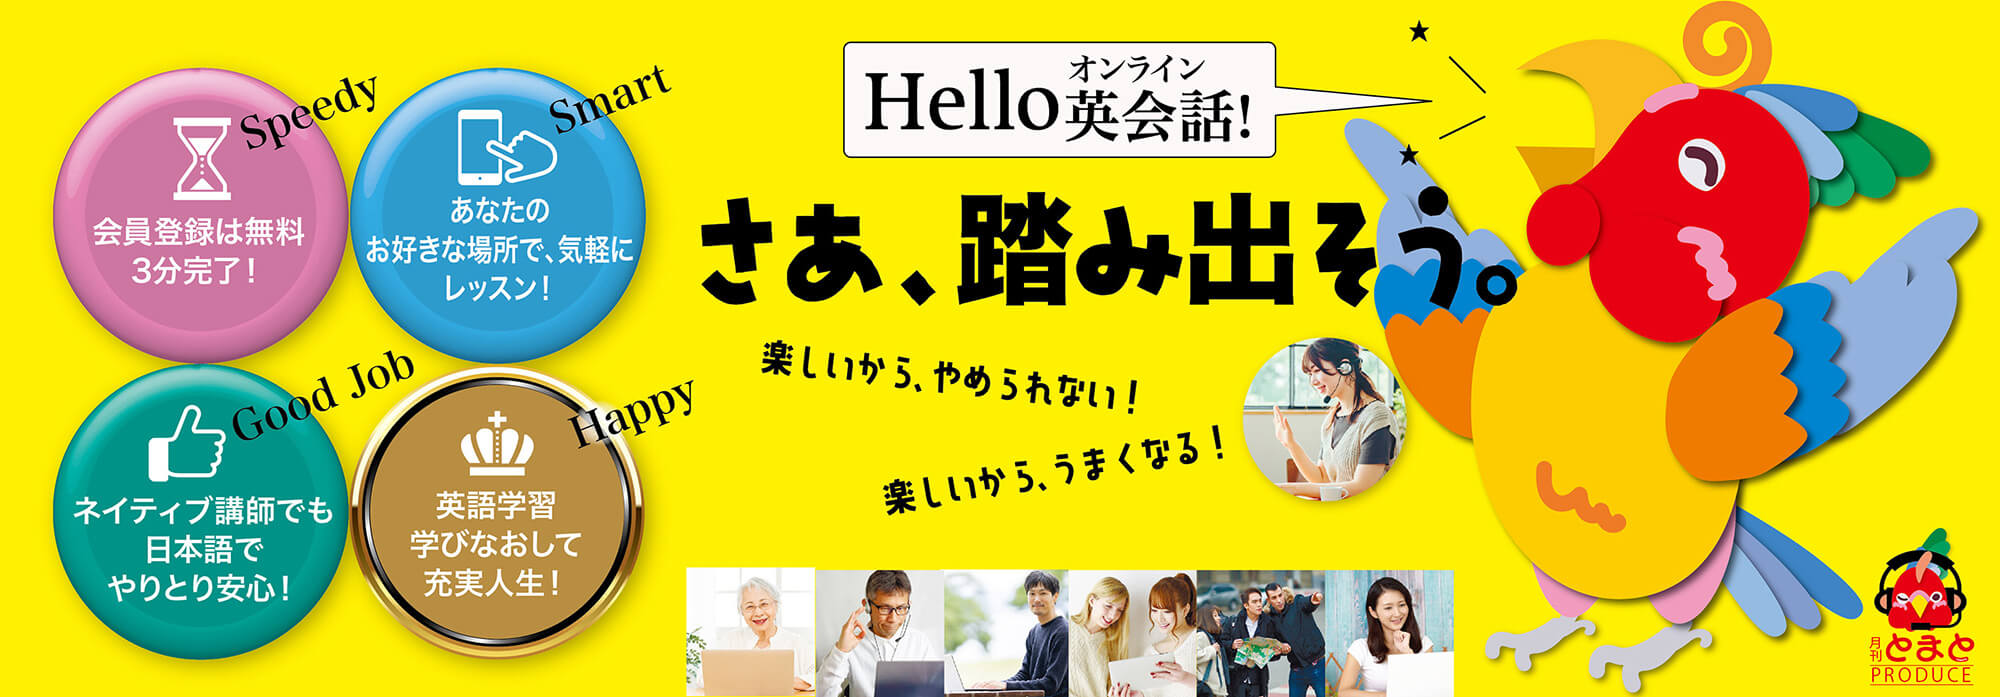 会員登録は無料　3分で完了 いつでも、あなたのお好きな場所でレッスン！ ネイティブ講師も日本語でやりとり安心！ 英語学習、学びなおしで充実人生! hello　オンライン英会話！